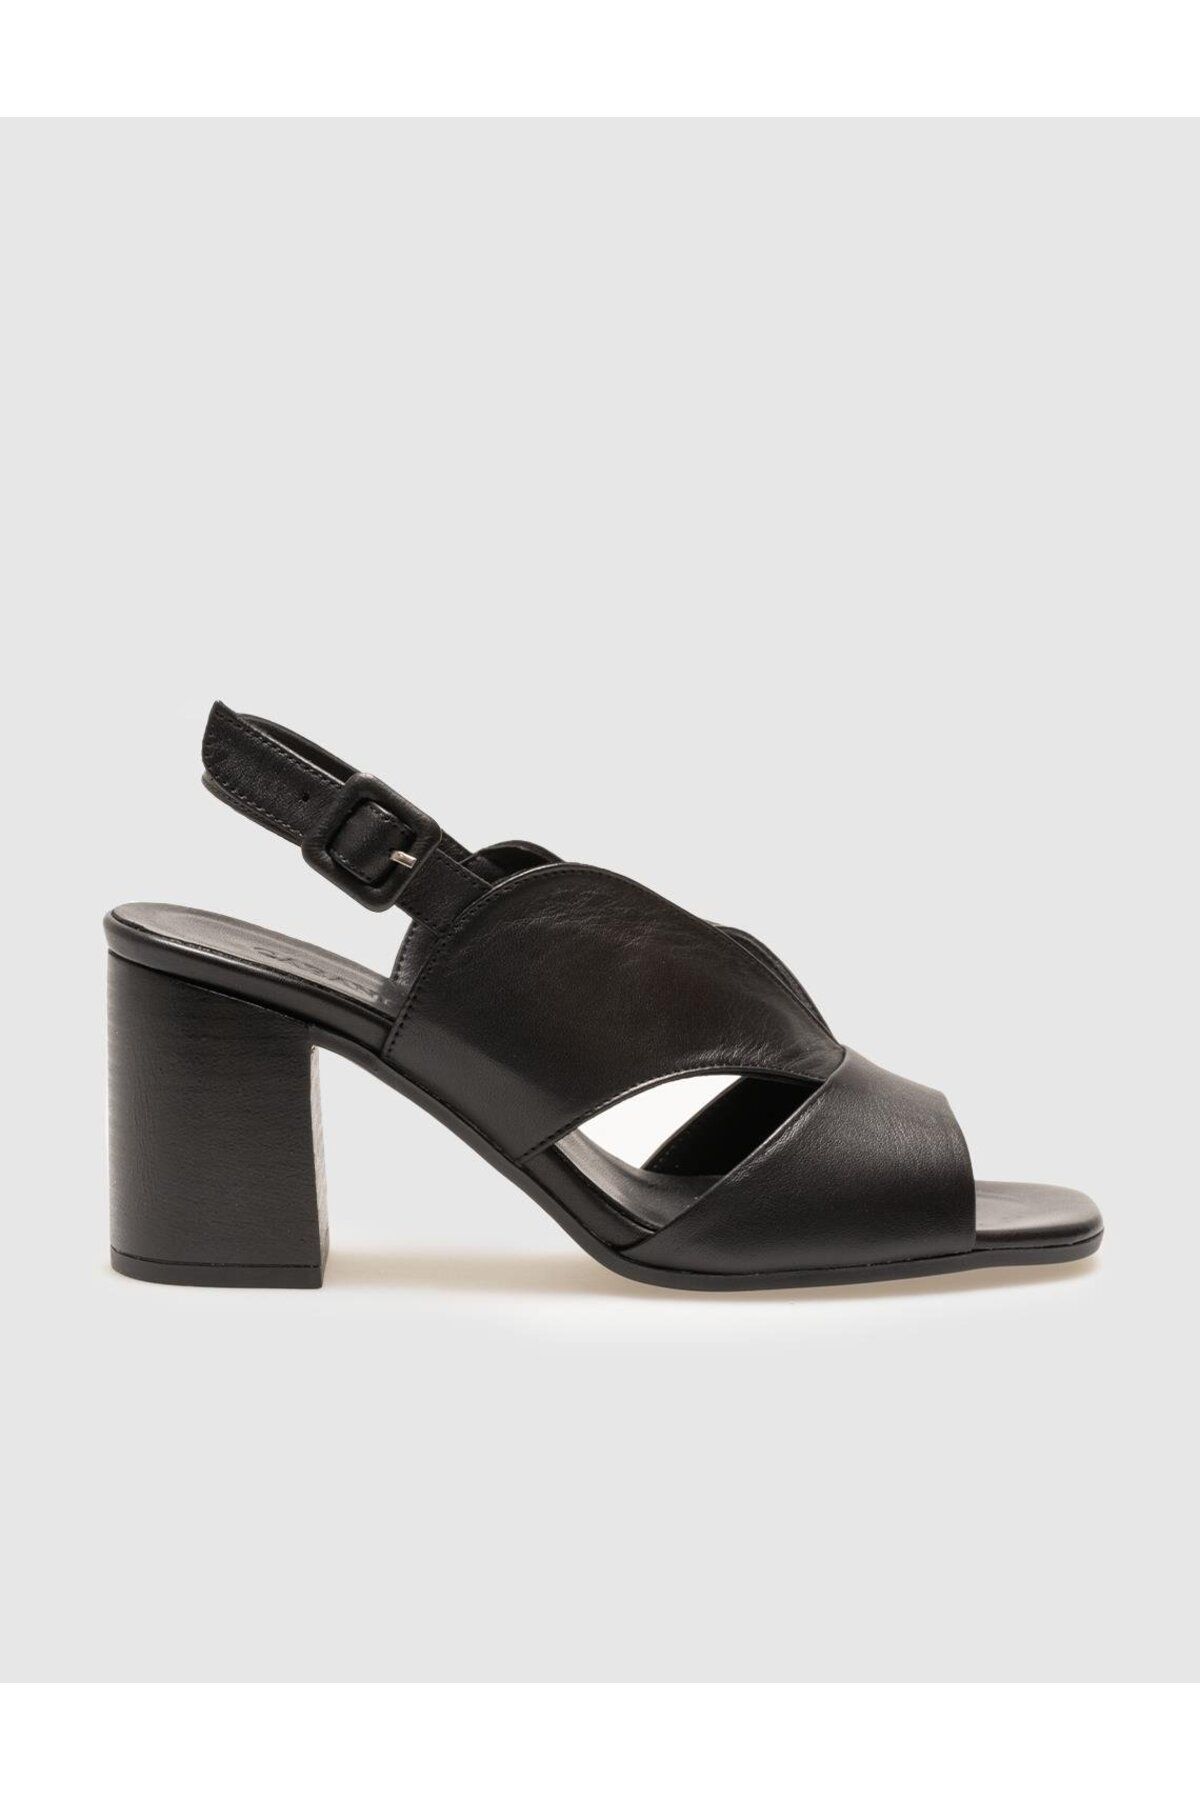 Cabani Hakiki Deri Siyah Tokalı Kadın Kalın Topuklu Ayakkabı